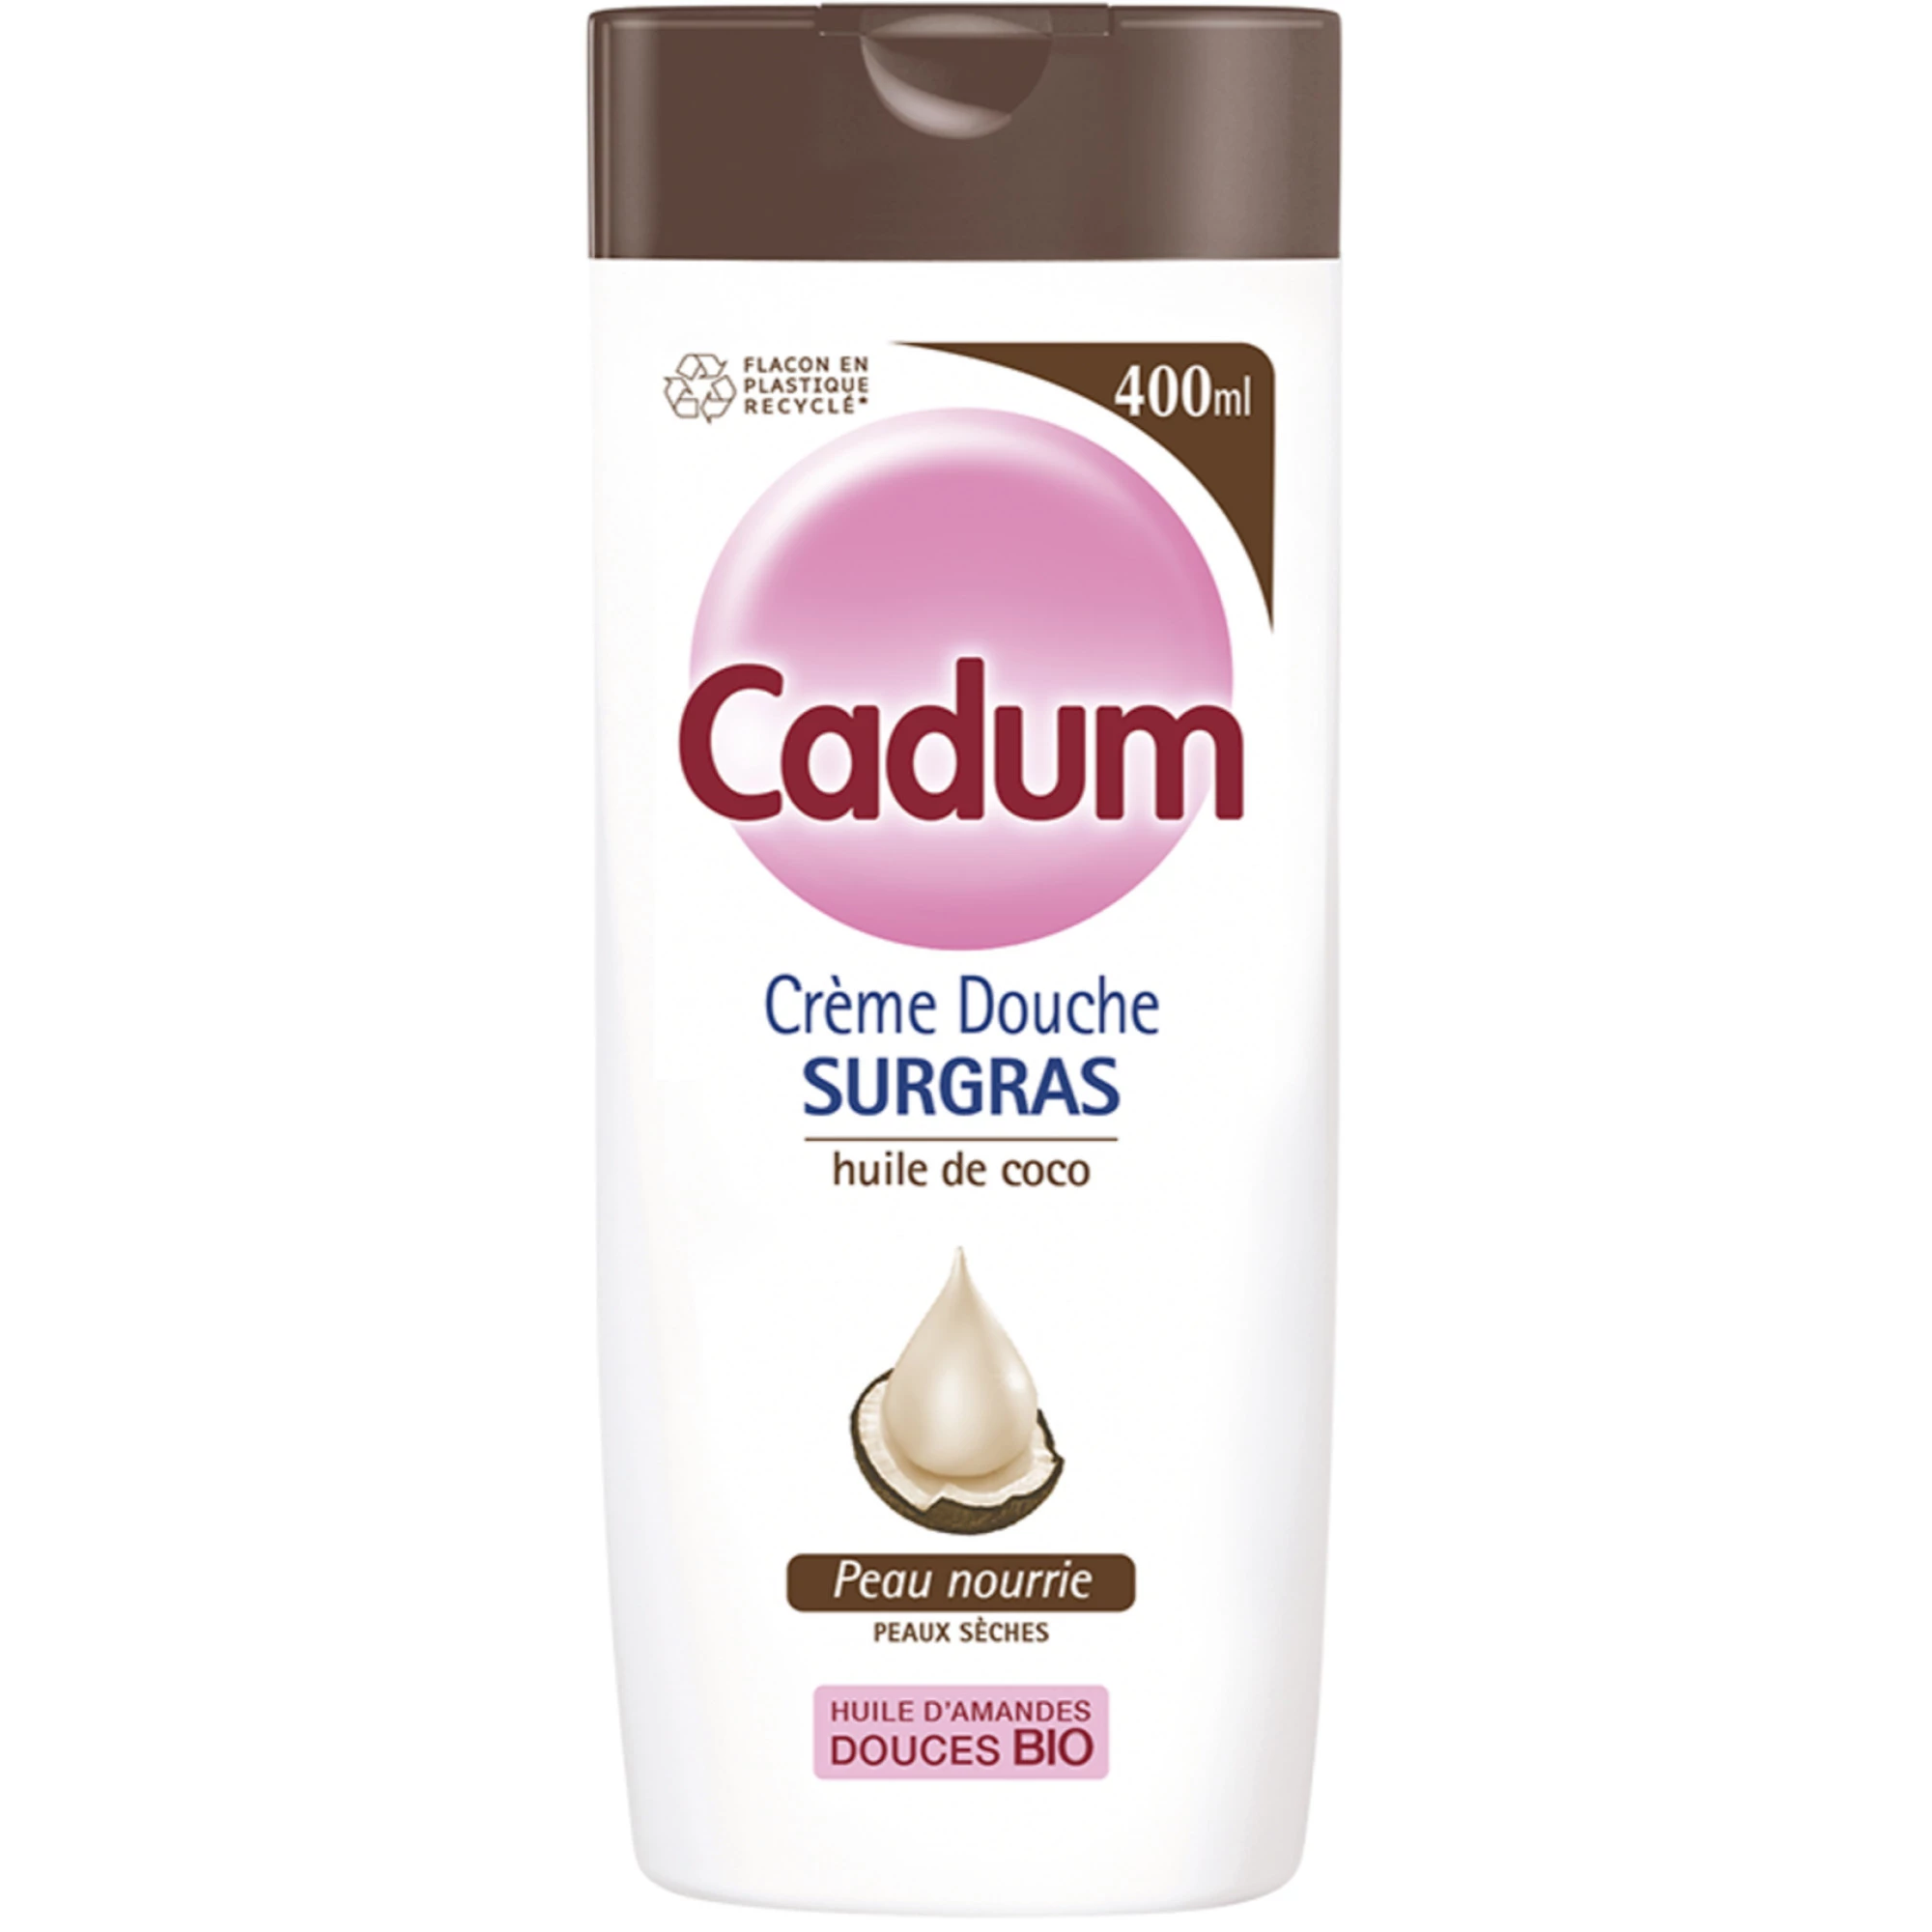 Coconut surgras shower cream - CADUM